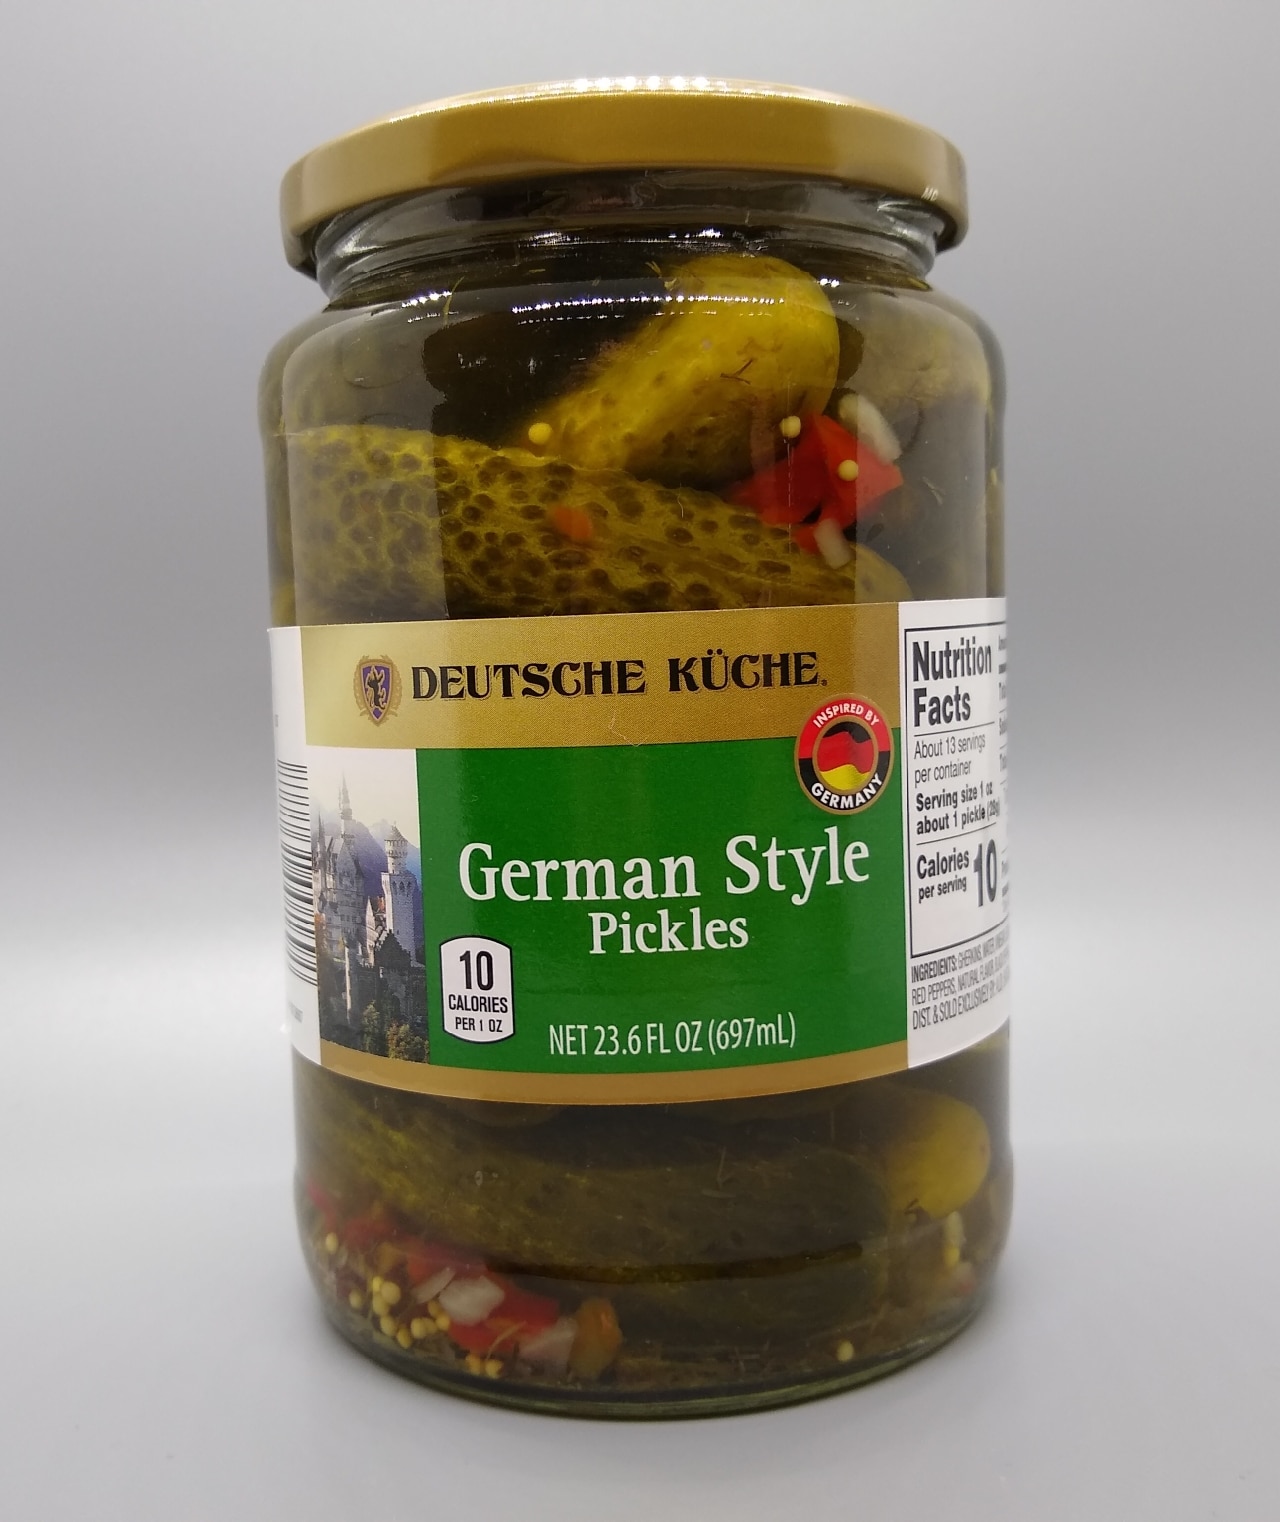 Deutsche Kuche German Style Pickles